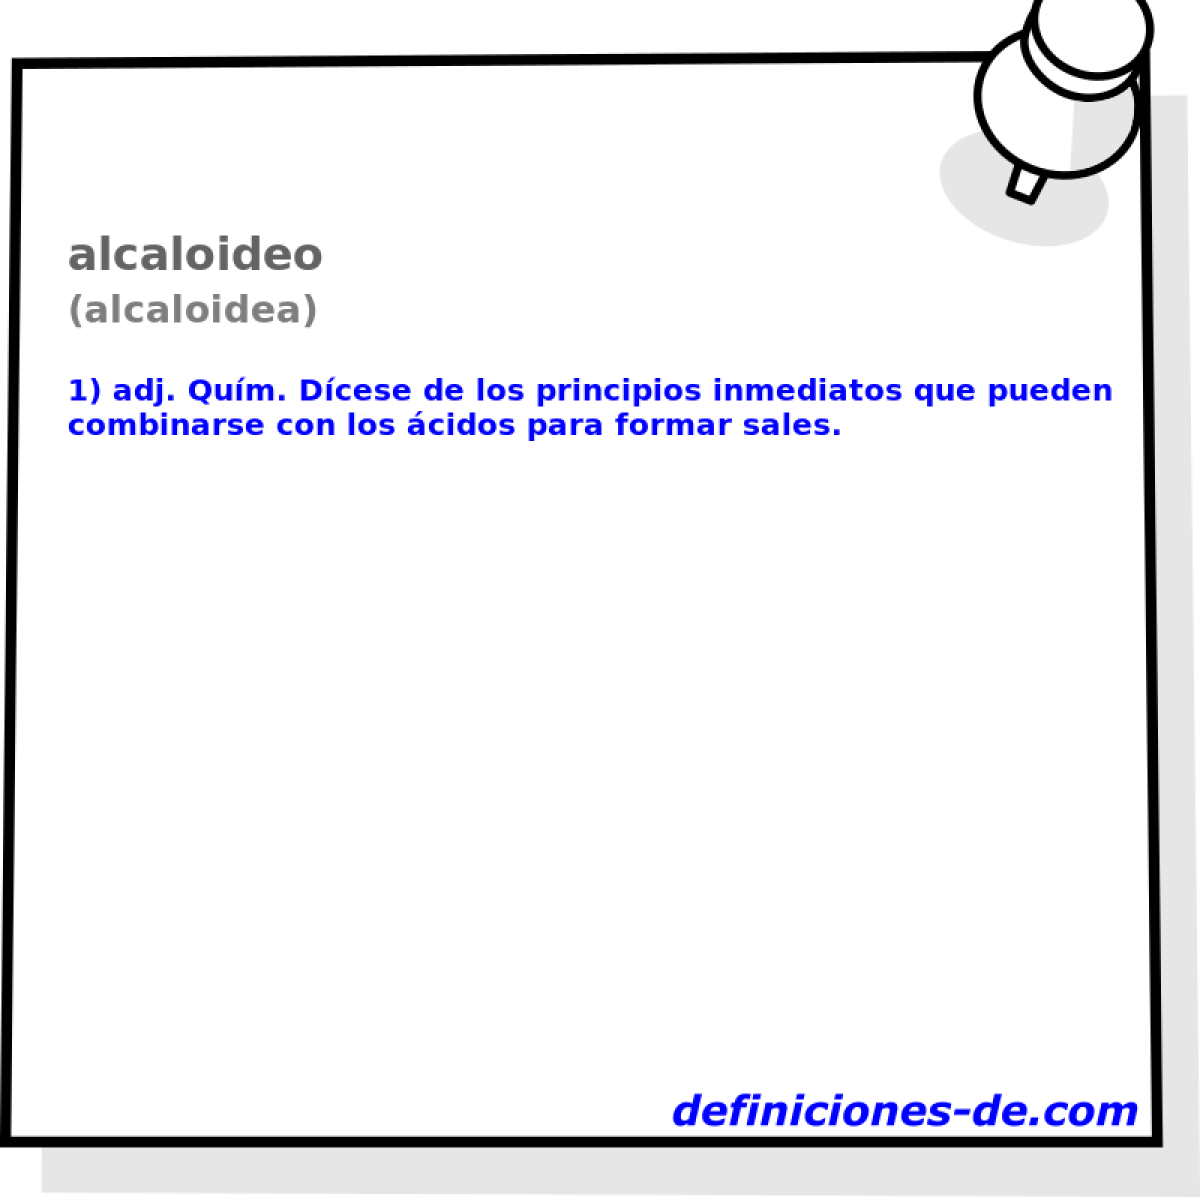 alcaloideo (alcaloidea)